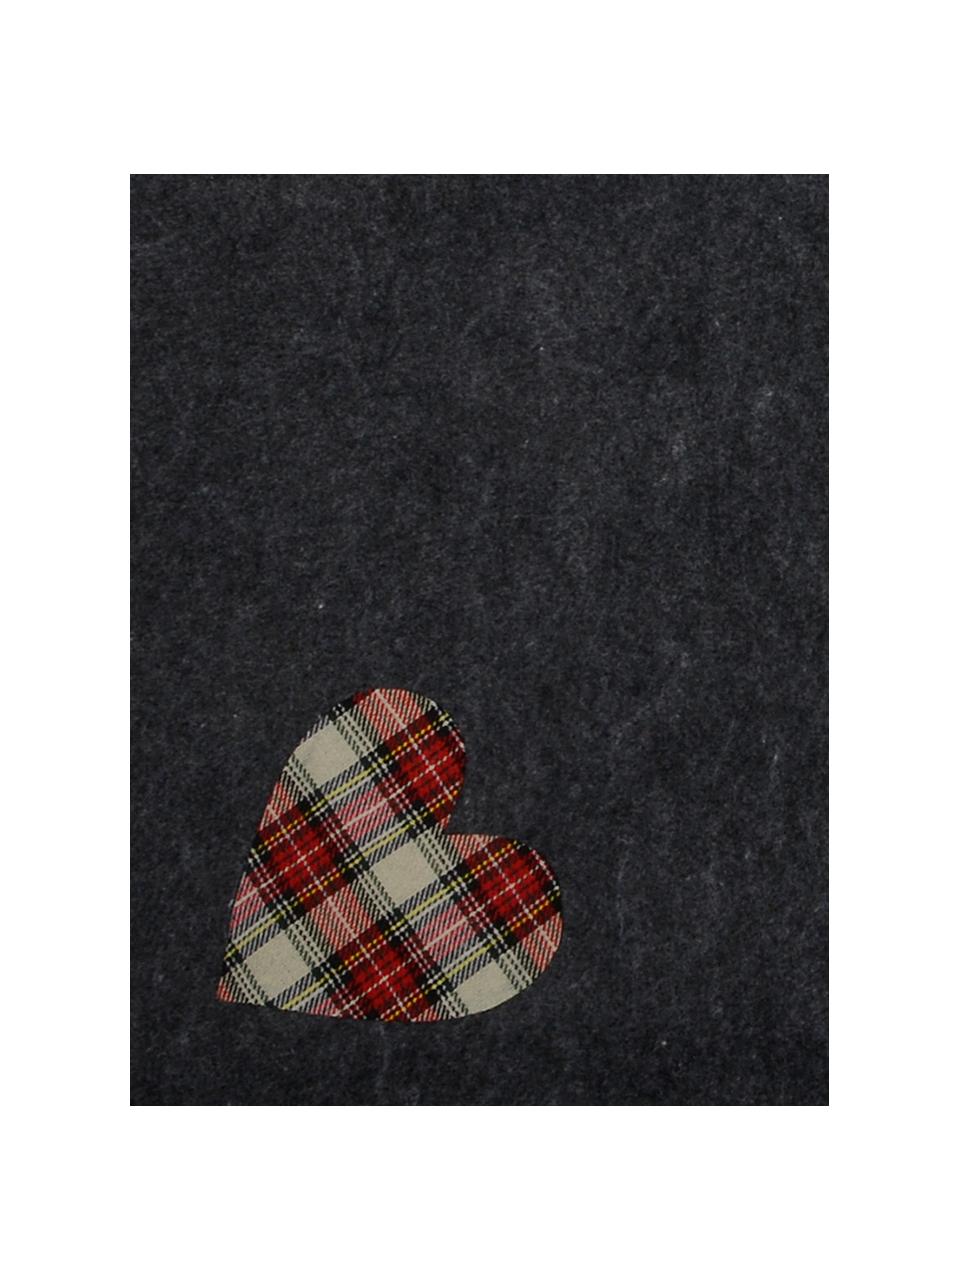 Podkładka pod choinkę Heart, Filc, Ciemny szary, beżowy, czerwony, Ø 100 cm